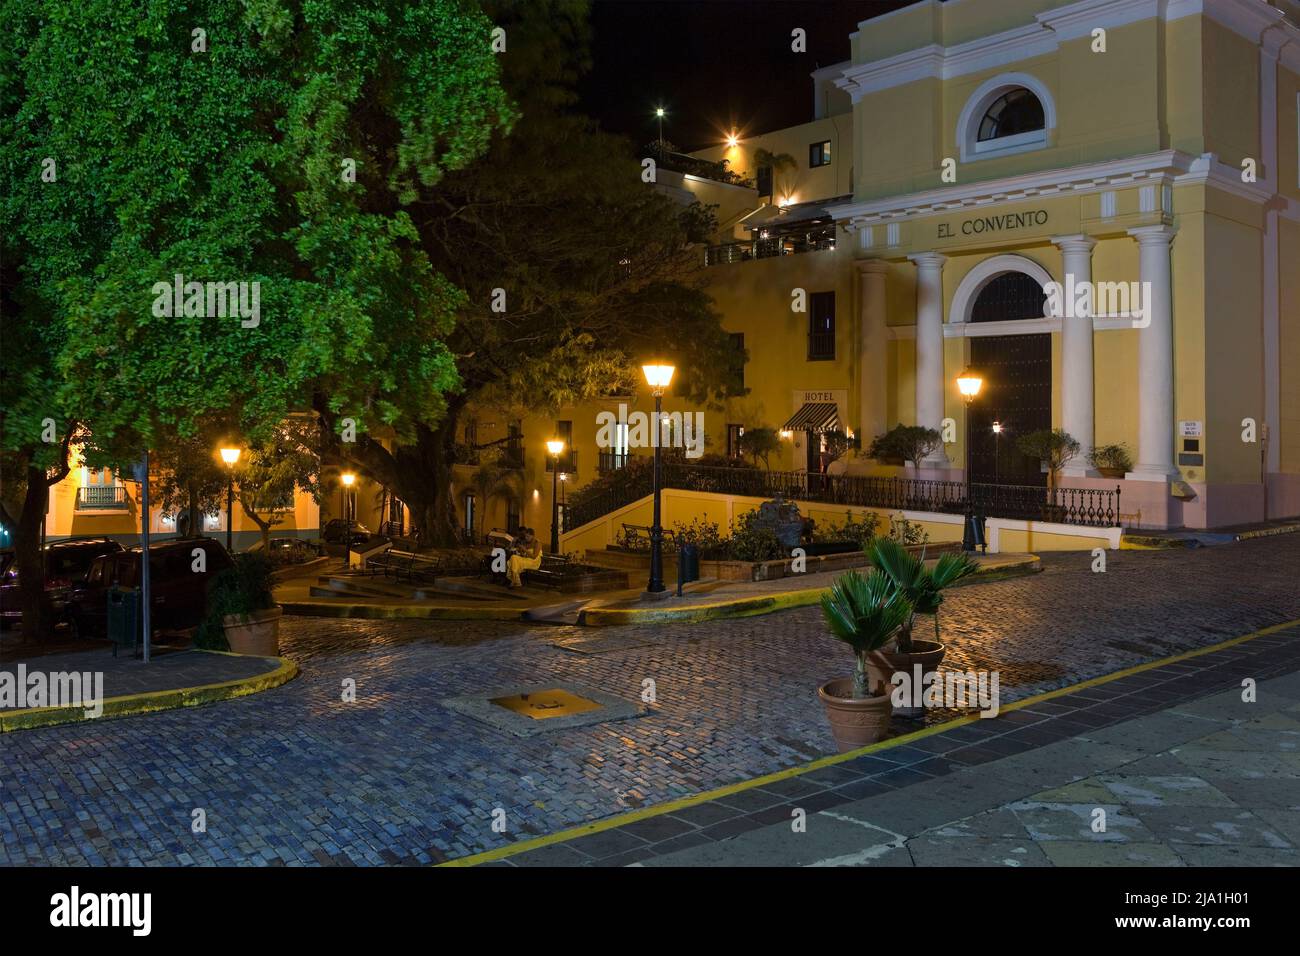 El Convento Hotel_Old San Juan_Puerto Rico H Stock Photo